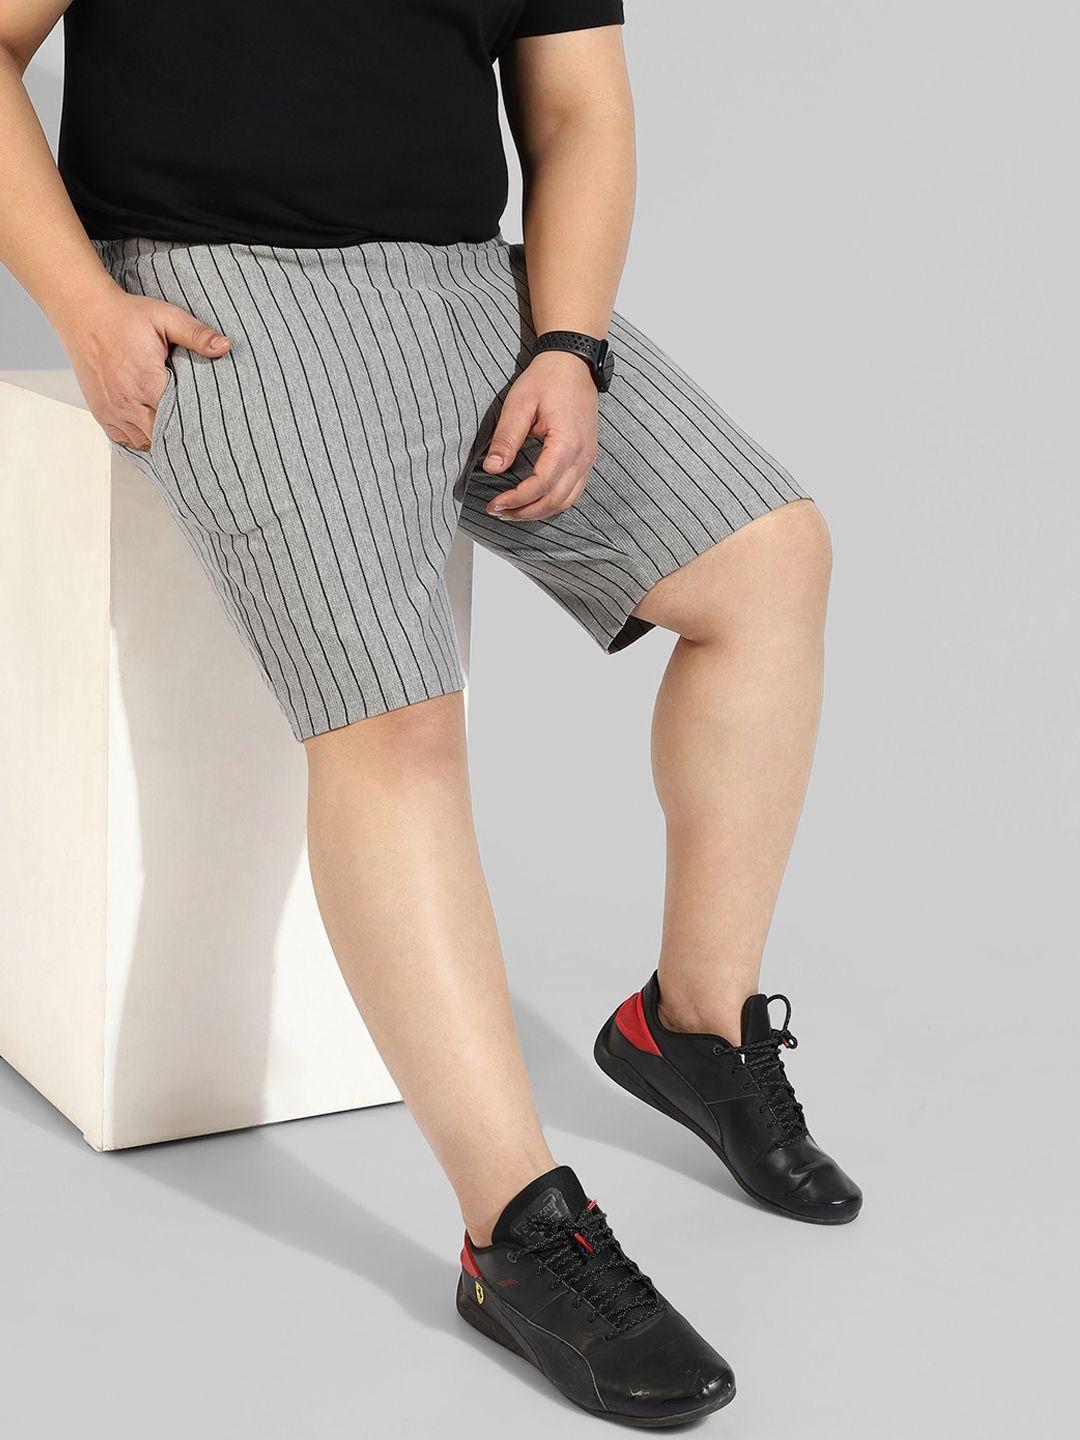 instafab-plus-men-plus-size-striped-cotton-regular-fit-shorts